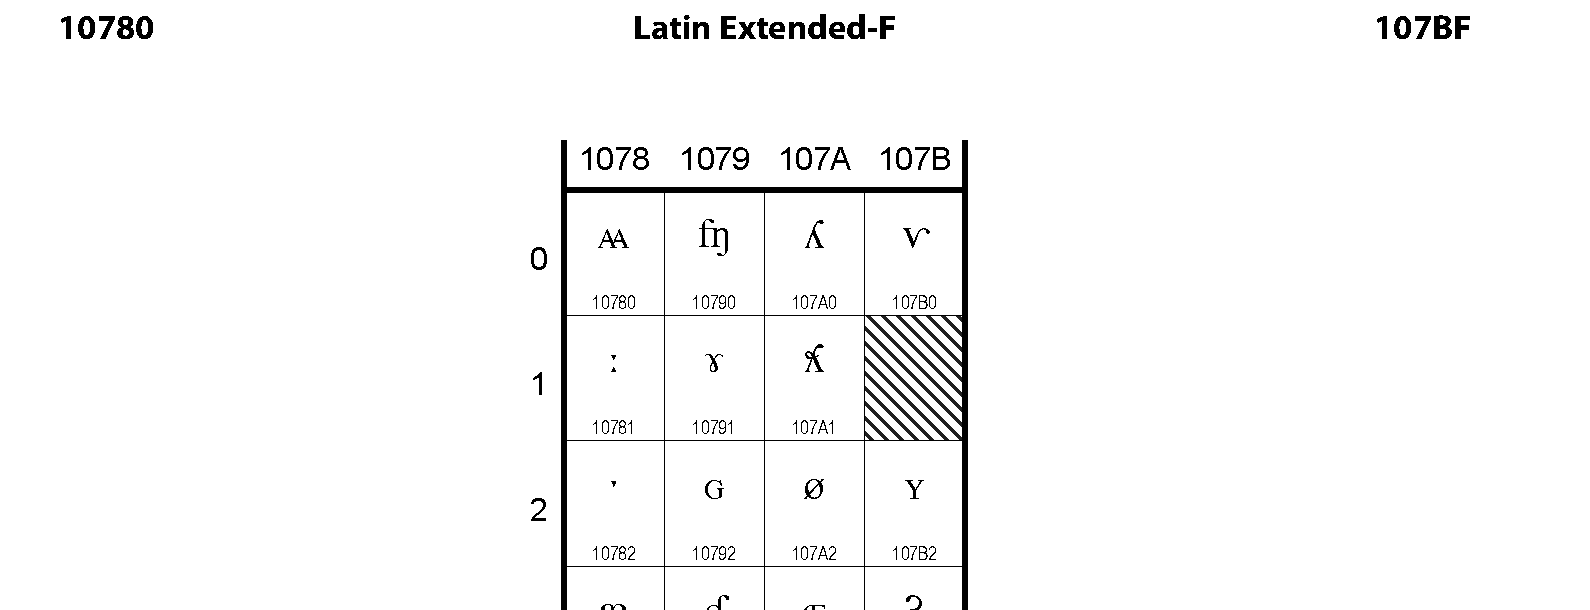 Unicode - Latin Extended-F